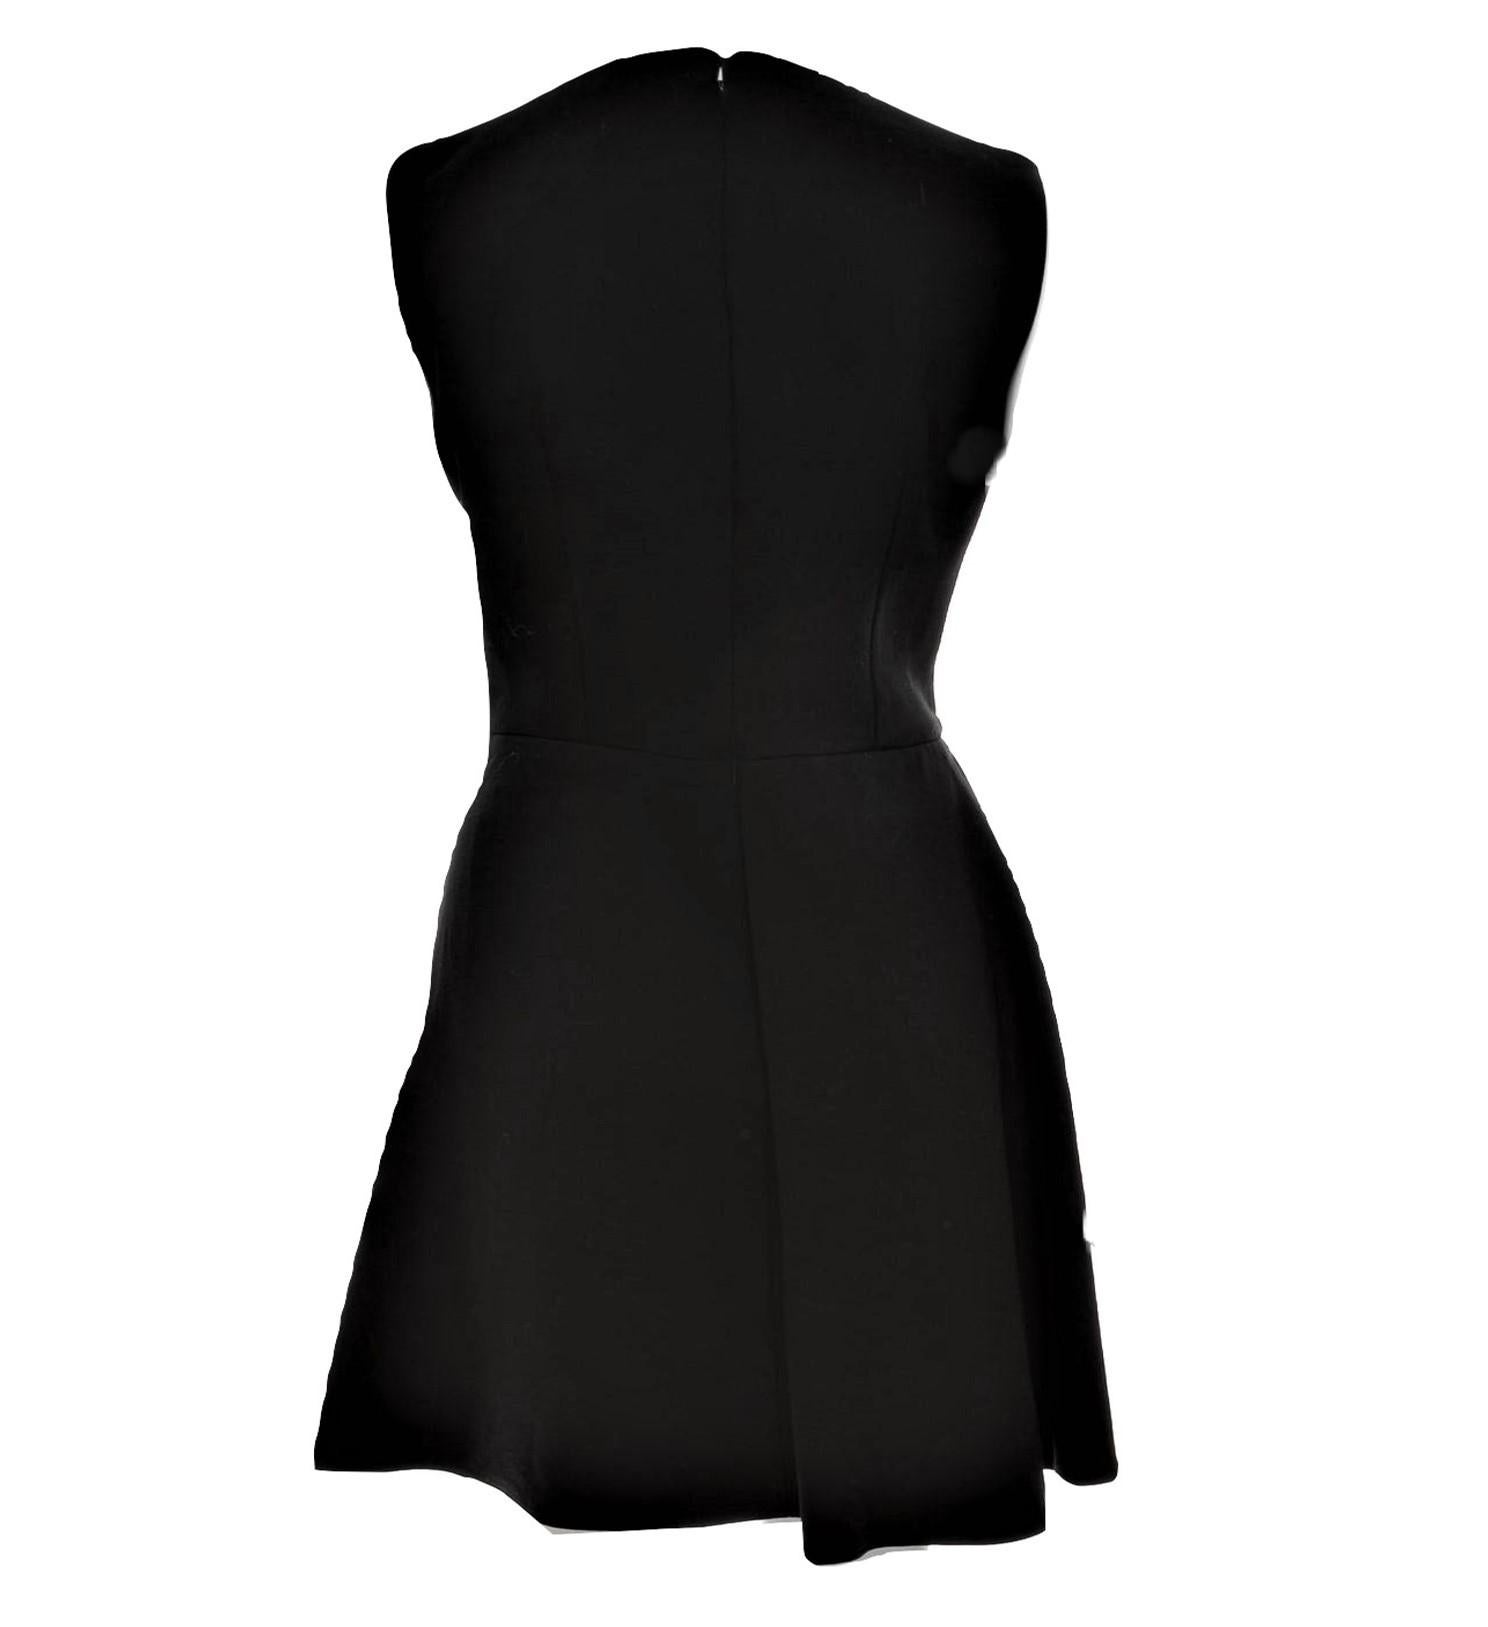 Women's New Alexander McQueen F/W 2015 Wool Dress  $2425 Sz IT 40